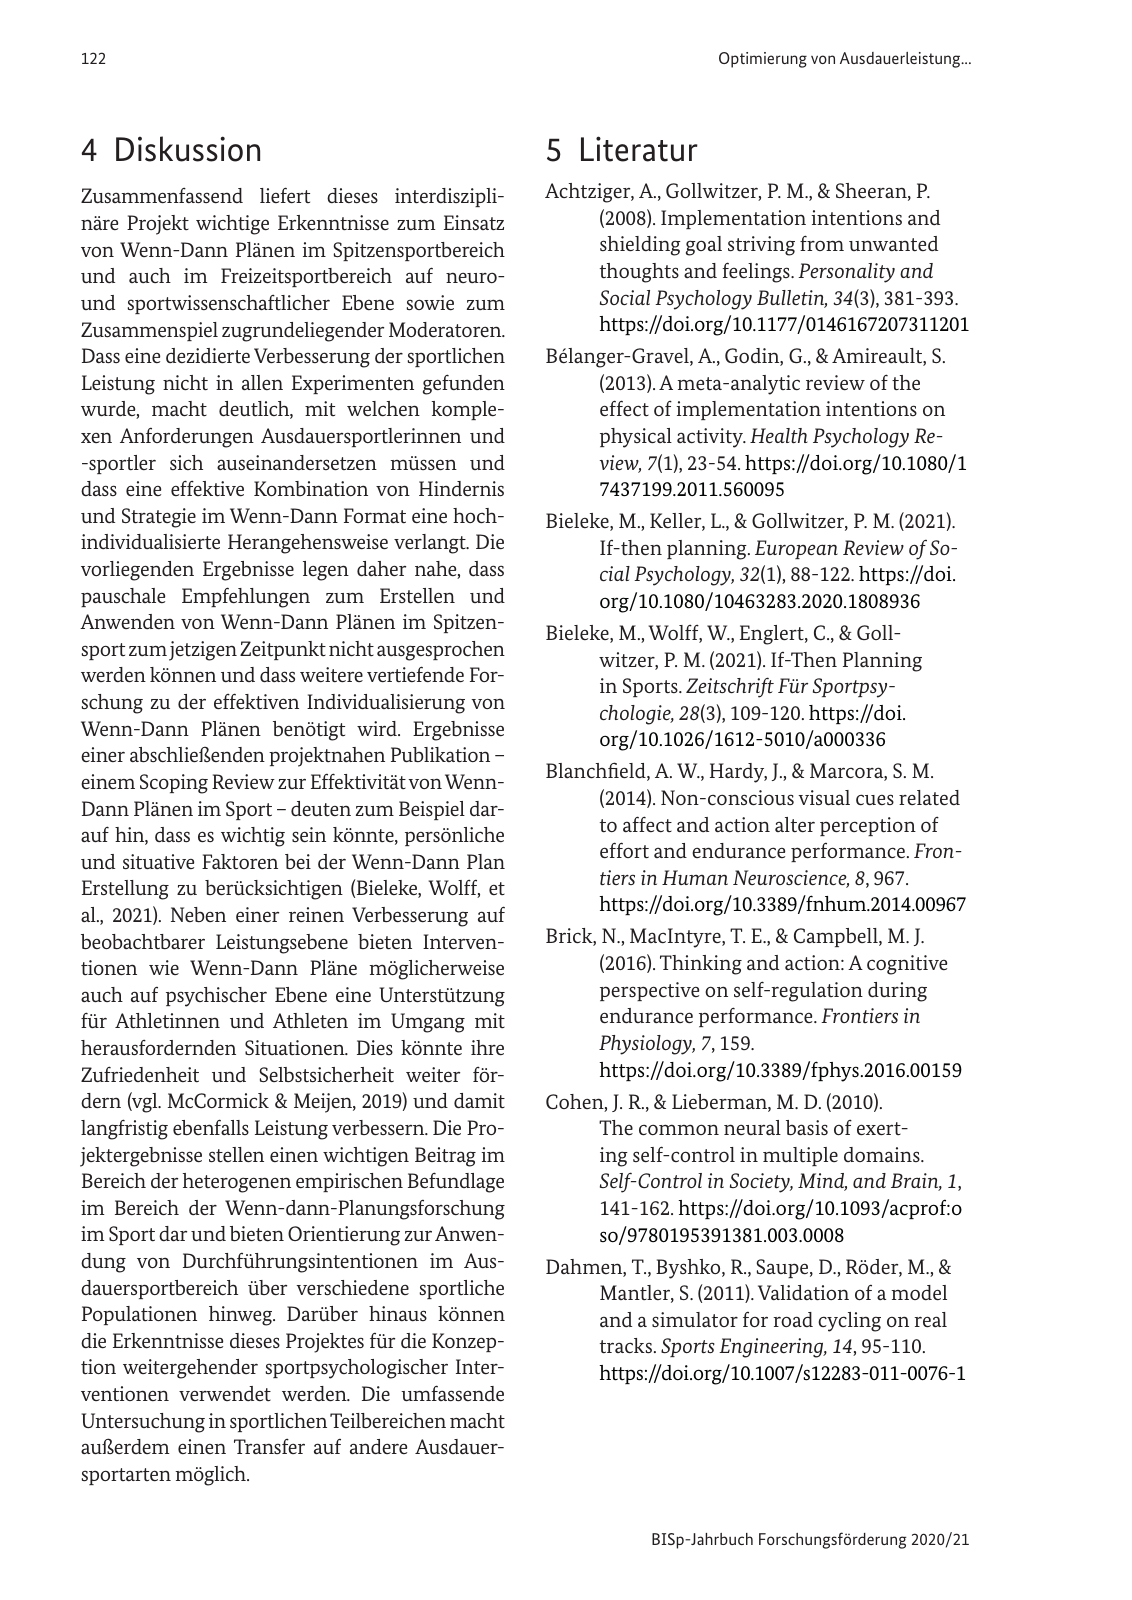 Vorschau BISp-Jahrbuch 2020/21 Seite 124